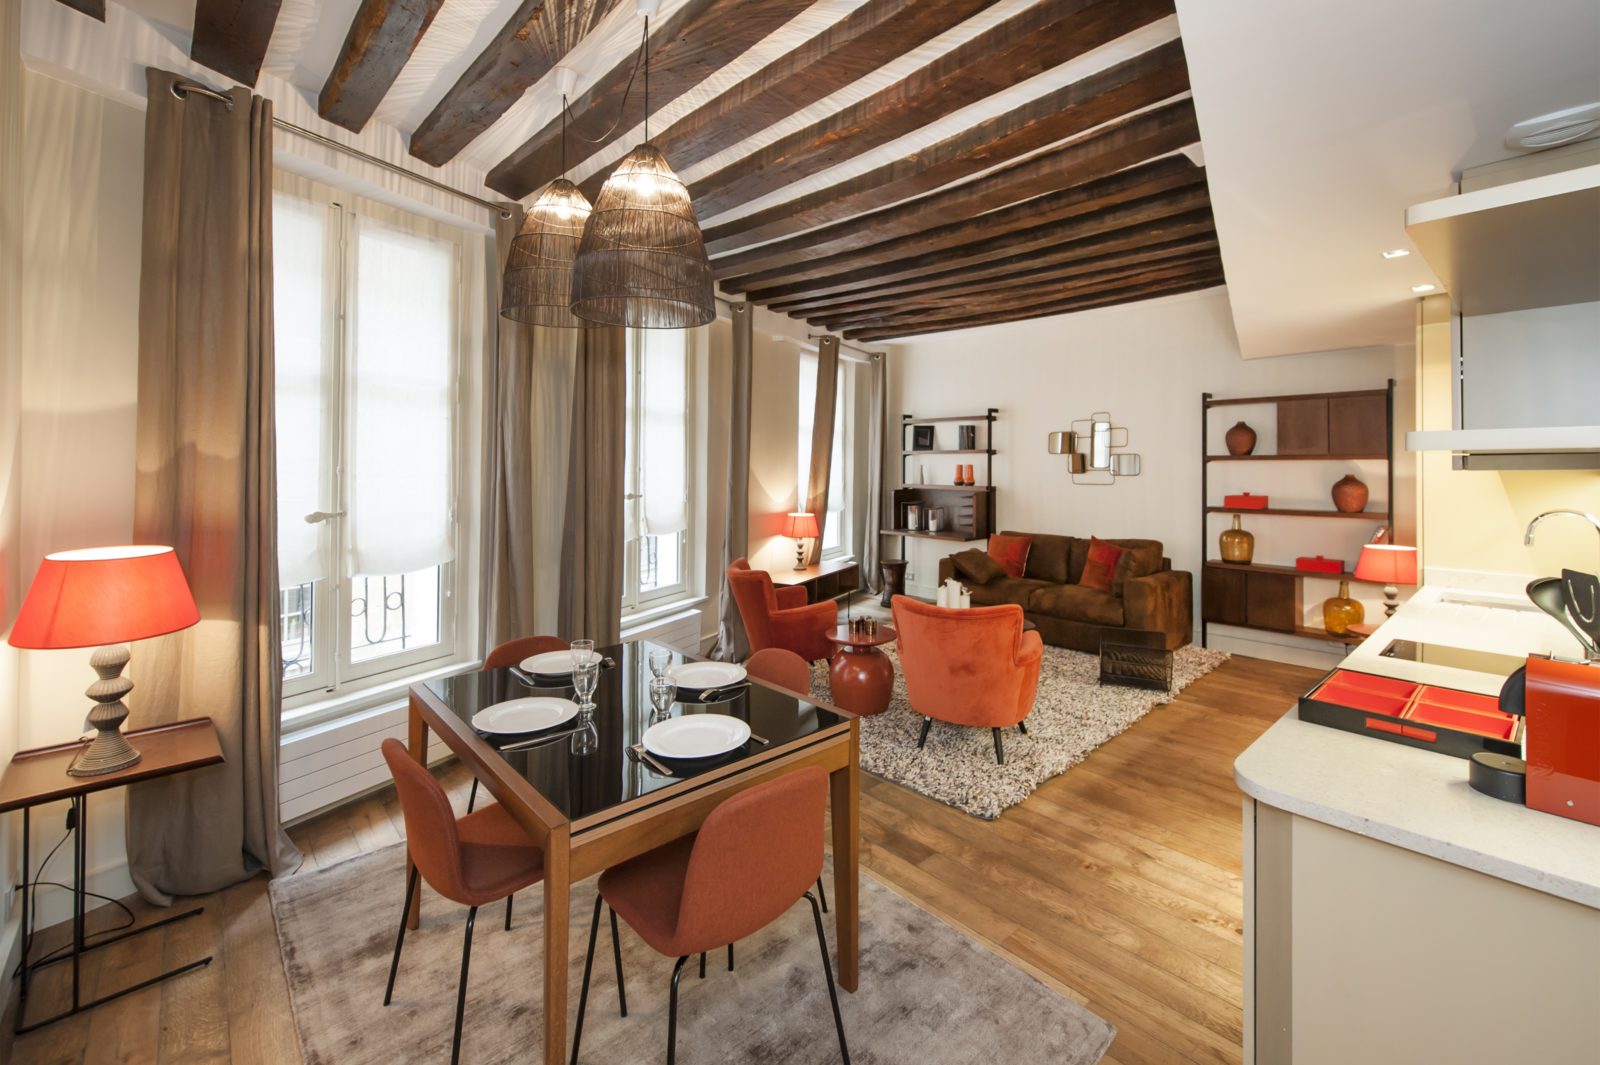 1 bedroom apartment rental in Paris, Rue Mazarine